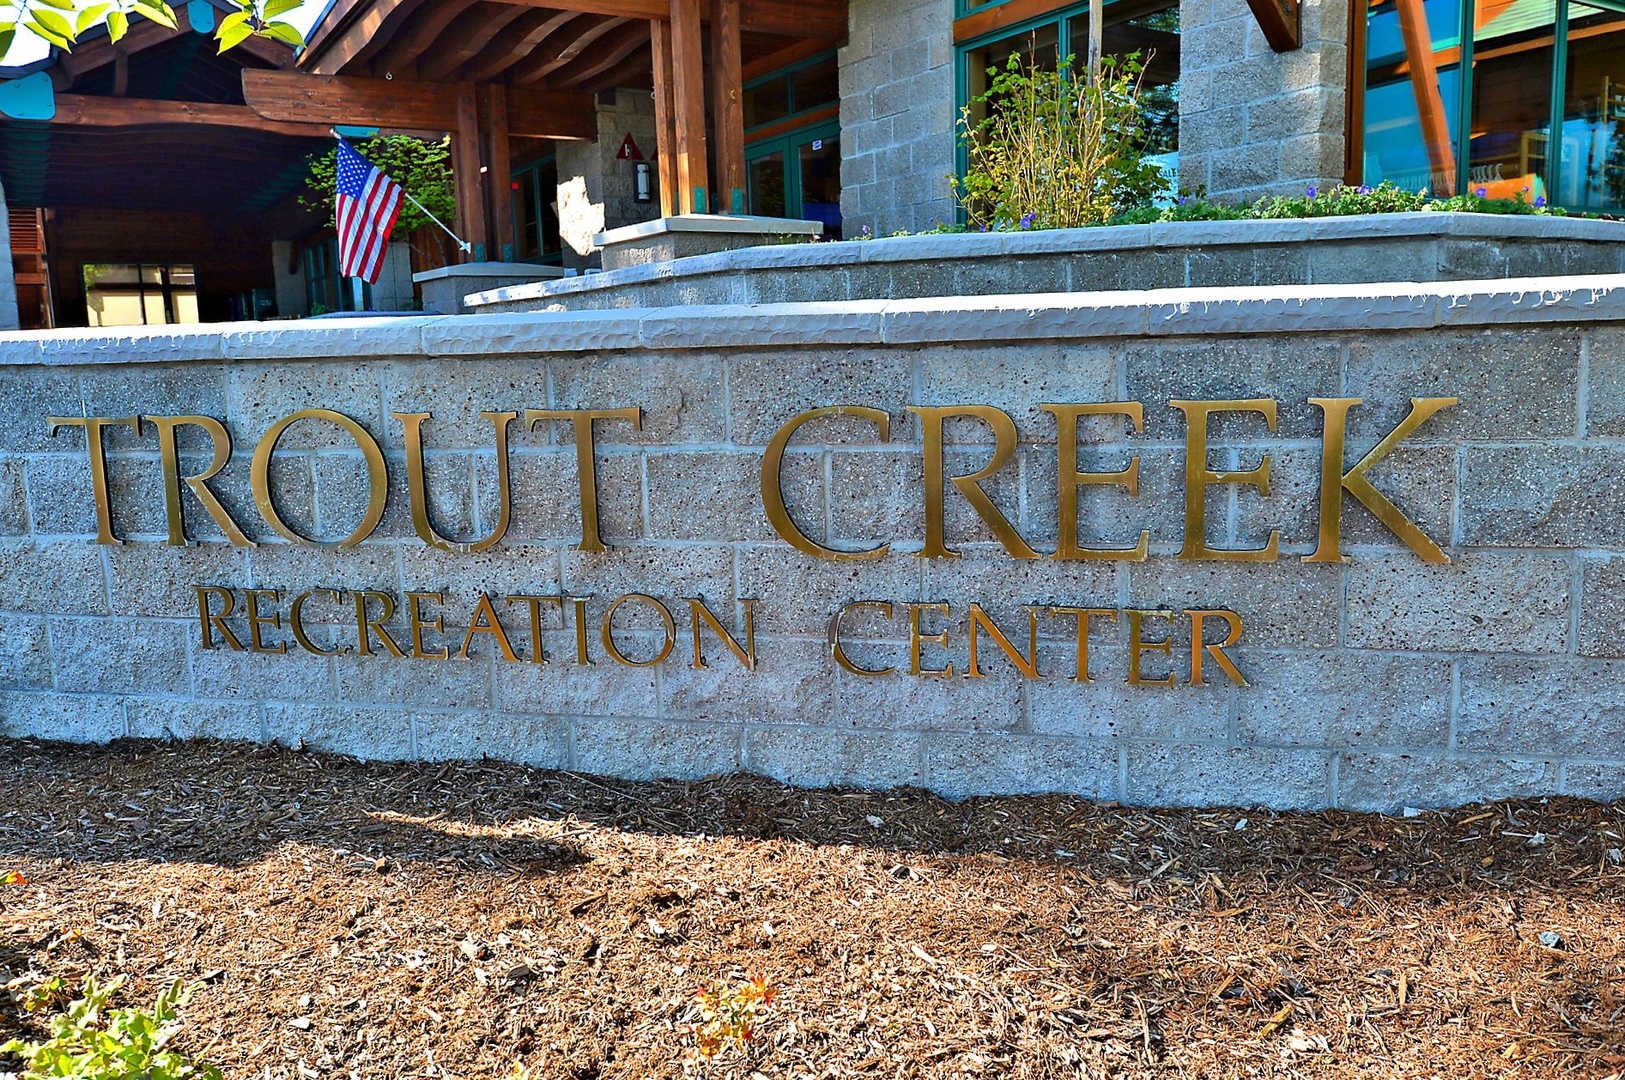 Trout Creek Rec. Center: Lakeview Mountaintop Chateau